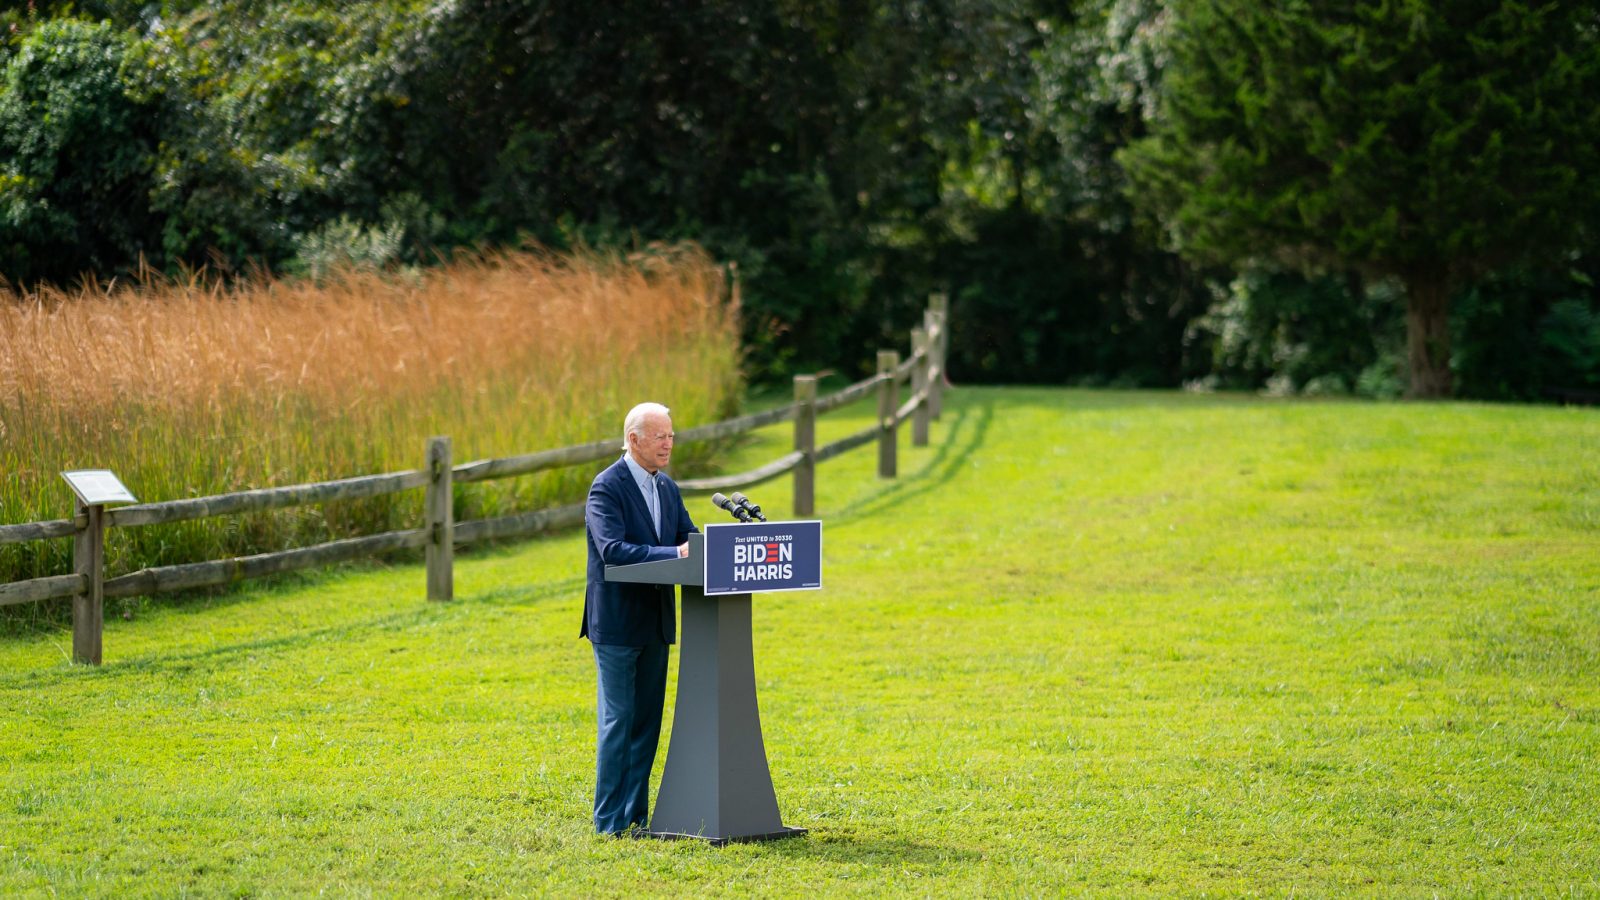 Then-candidate Joe Biden giving a speech on the environment